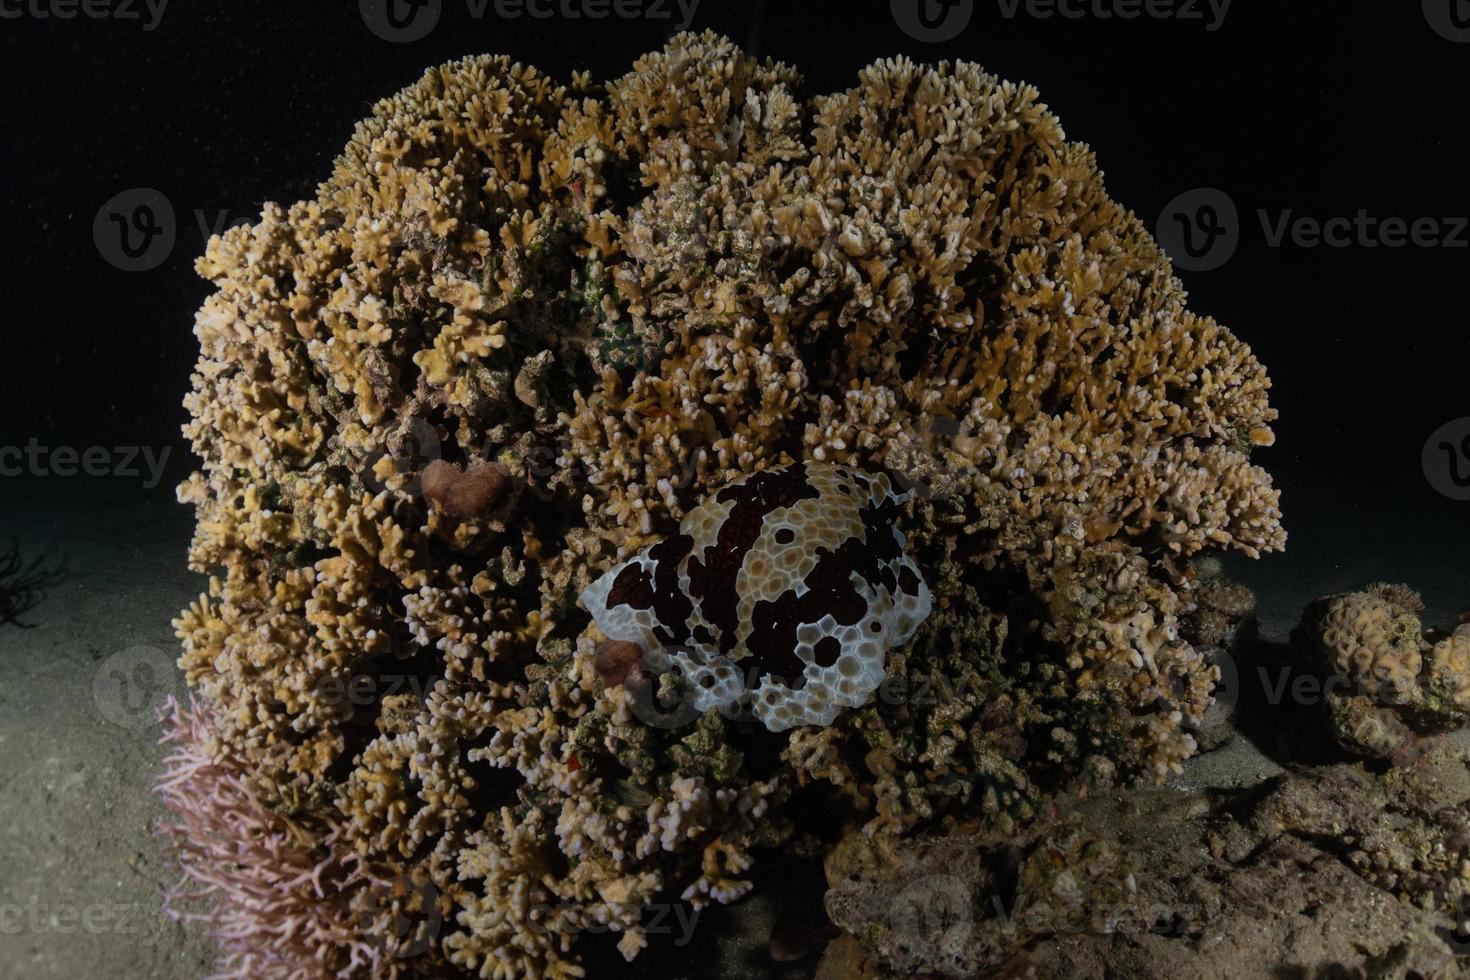 récif de corail et plantes aquatiques dans la mer rouge, eilat israël photo